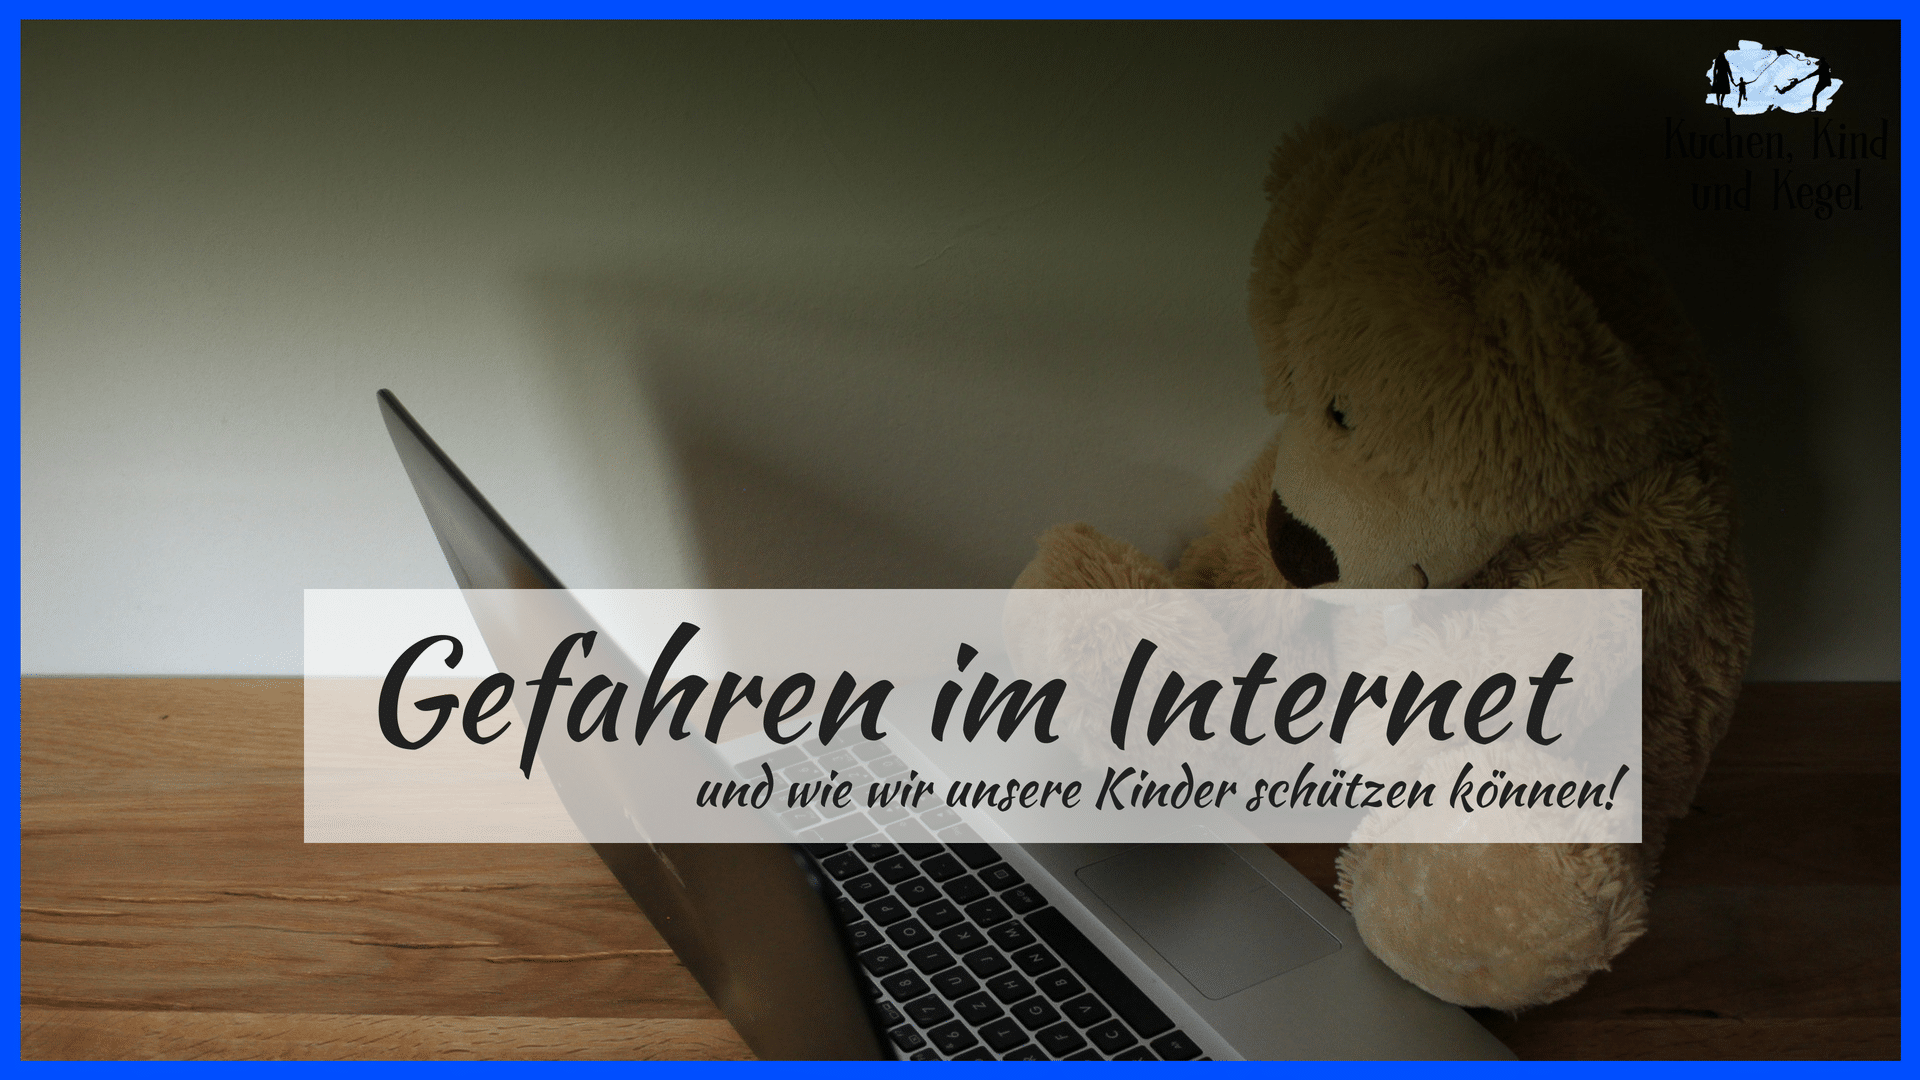 Gefahren im Internet und wie wir unsere Kinder schützen können